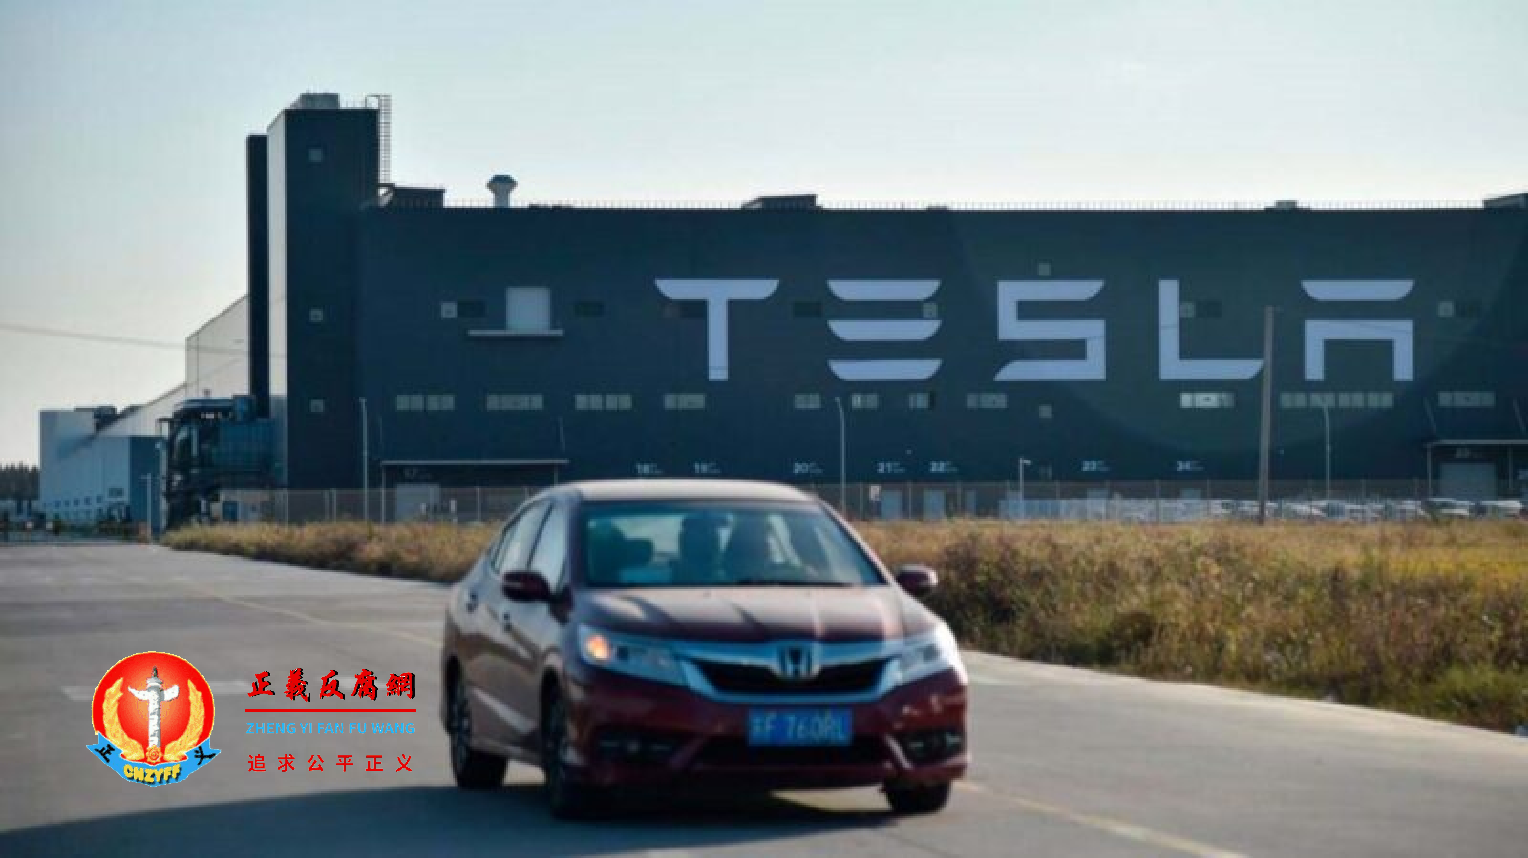 2019 年 11 月 8 日，一辆汽车从特斯拉在上海建造的新工厂前驶过。.png